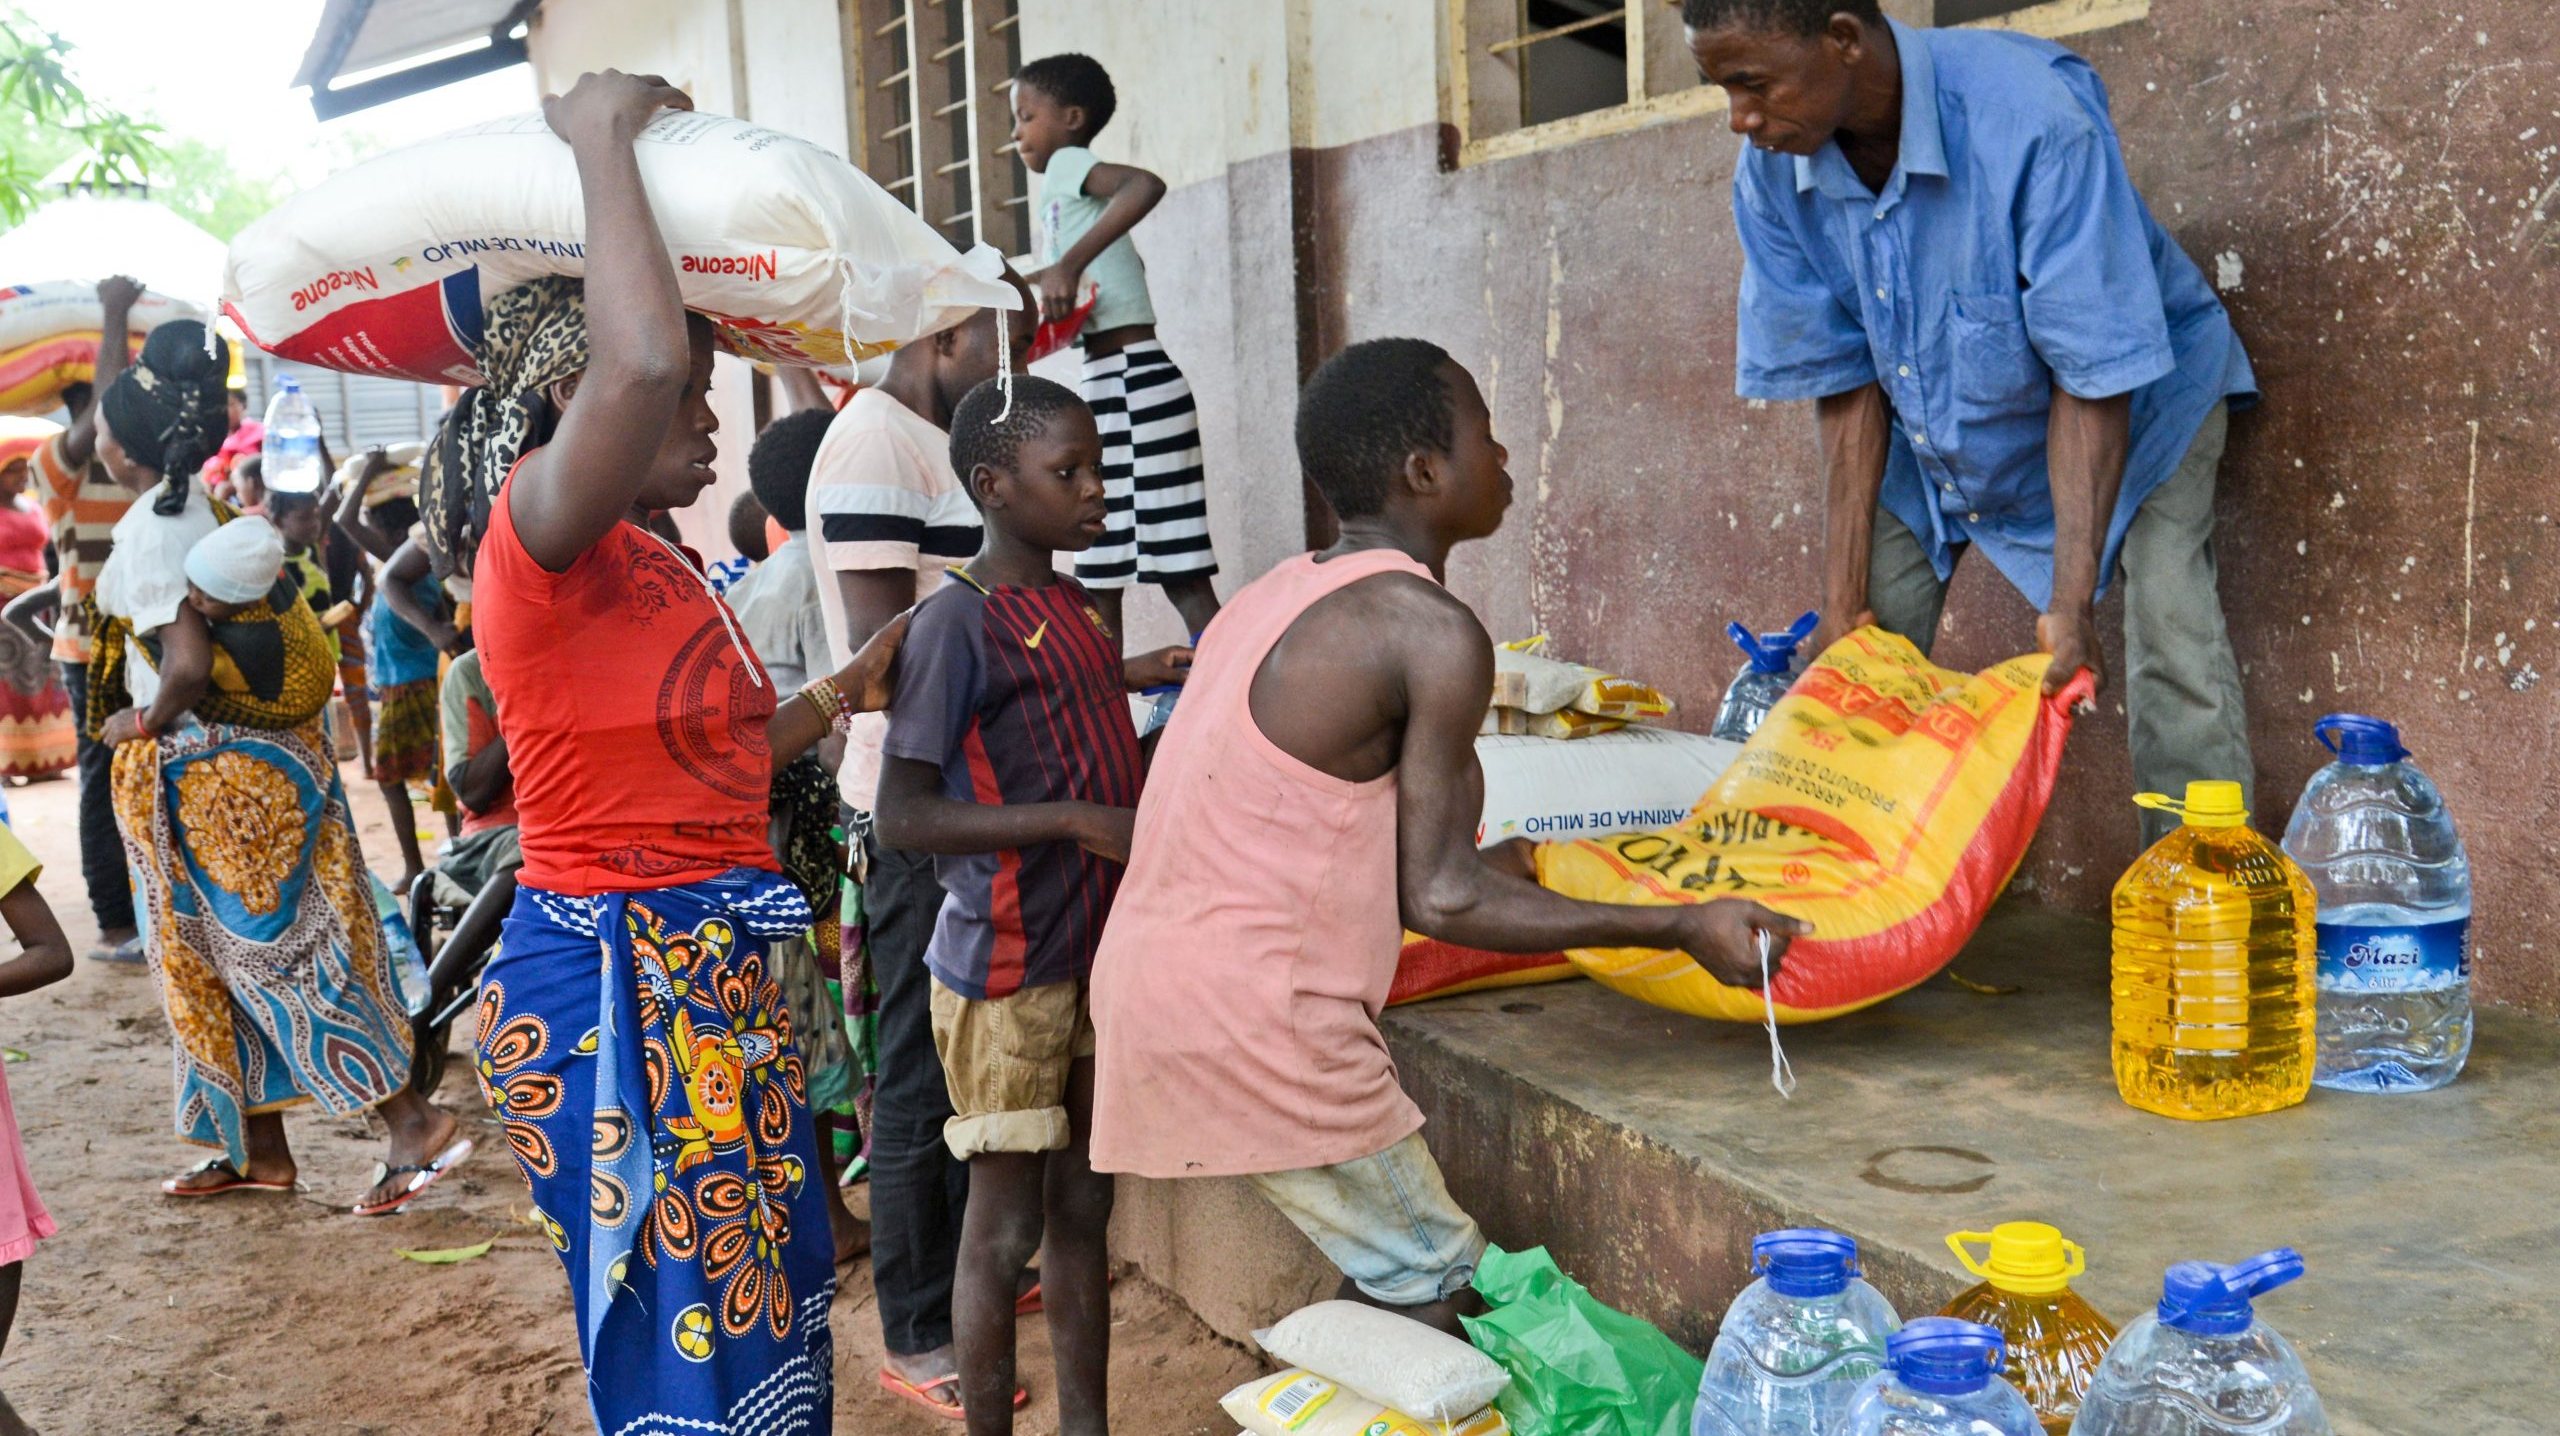 A Viver 100 Fronteiras dinamiza operações de ajuda humanitária em vários países africanos, como Guiné-Bissau, Cabo Verde e Moçambique